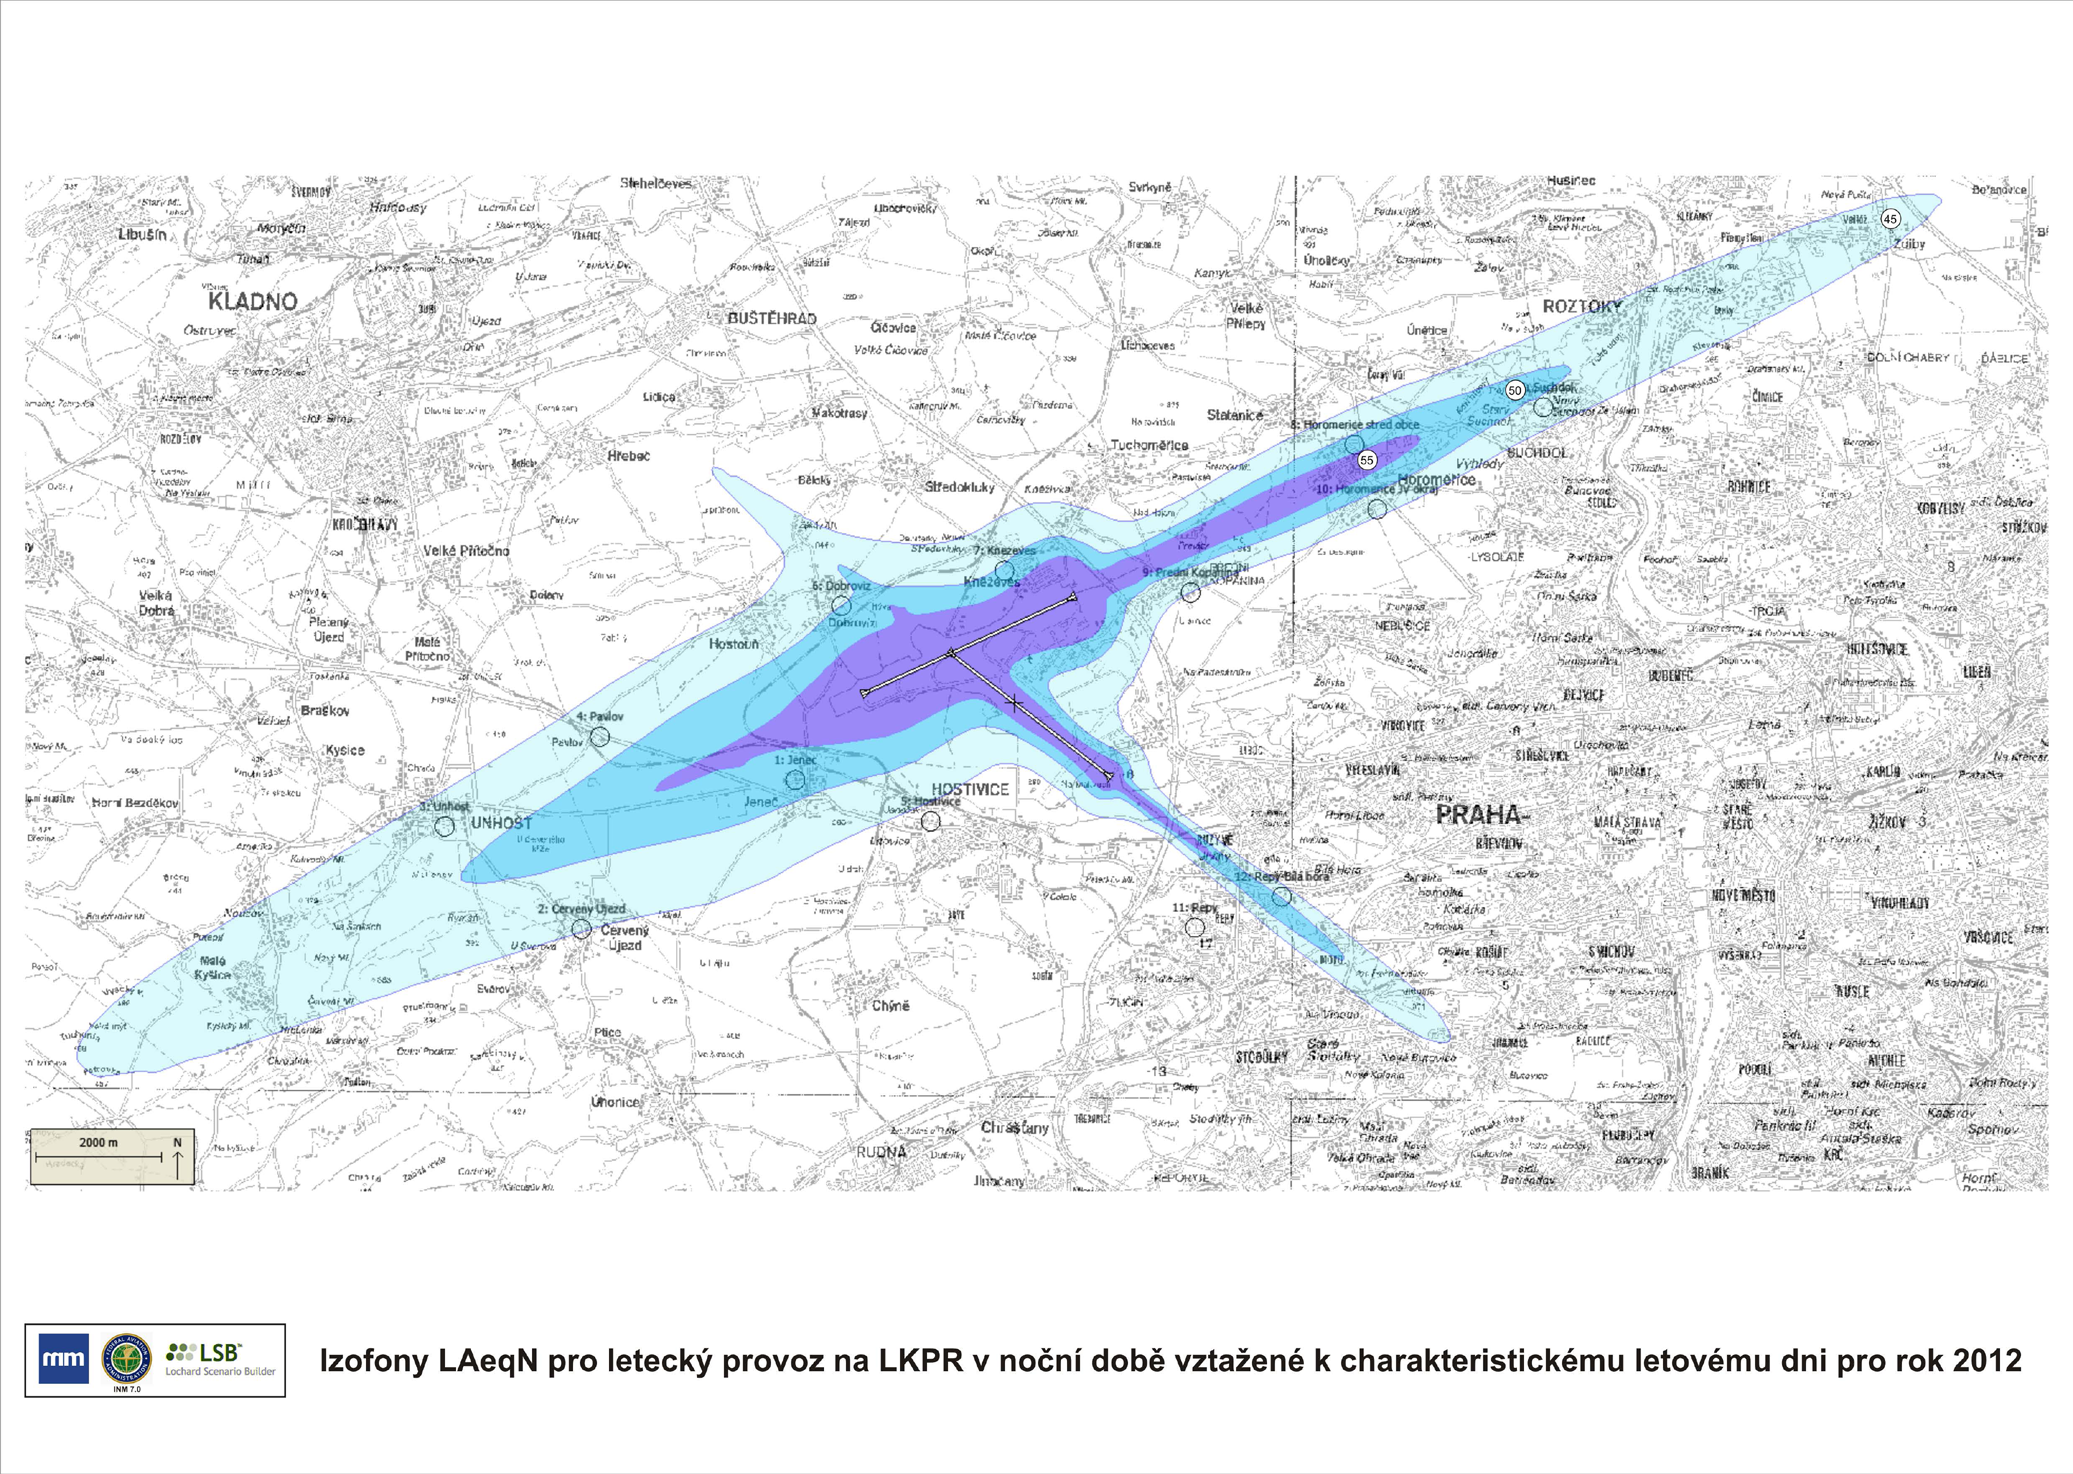 HLUK Obr..3.5: Izofony z leteckého provozu v denní době (06-22 h.) vztažené k charakteristickému letovému dni v roce 2012 Pozn.